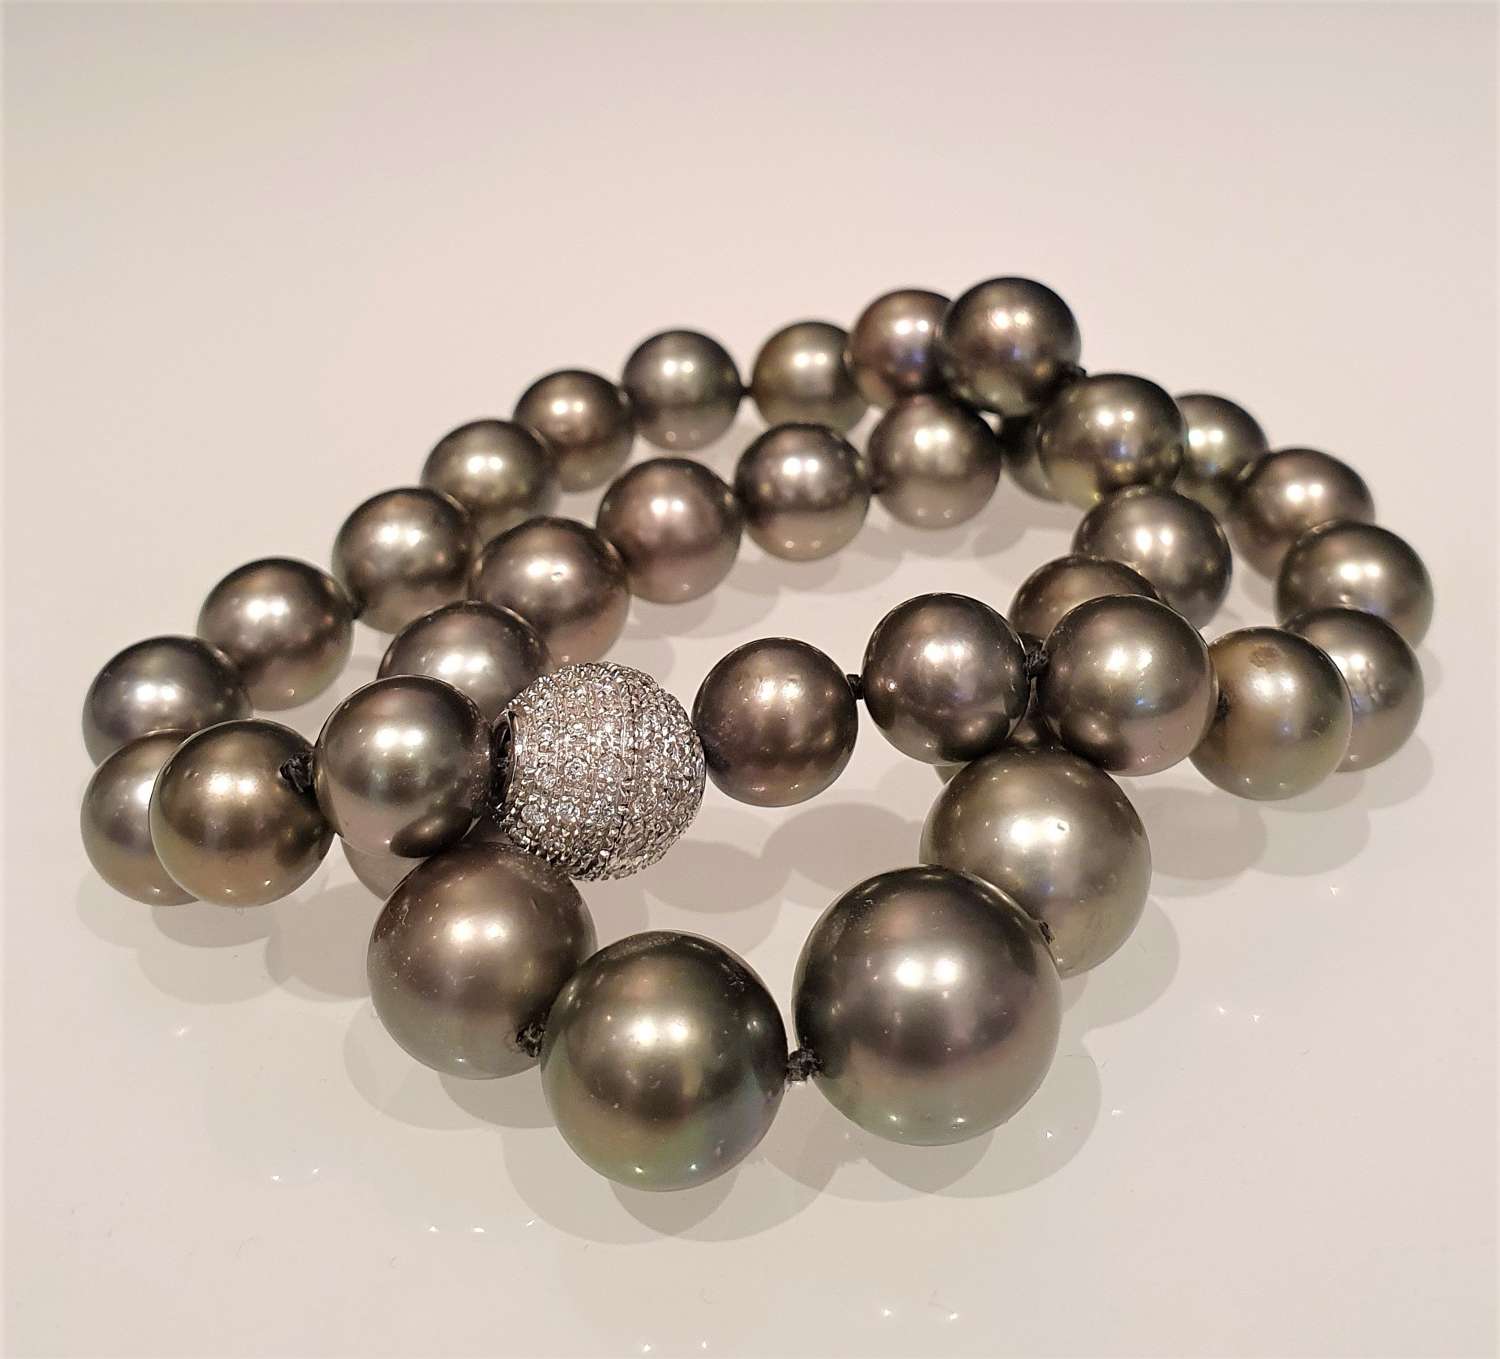 Tahiti cultured pearls 10.5mm to 14.8mm